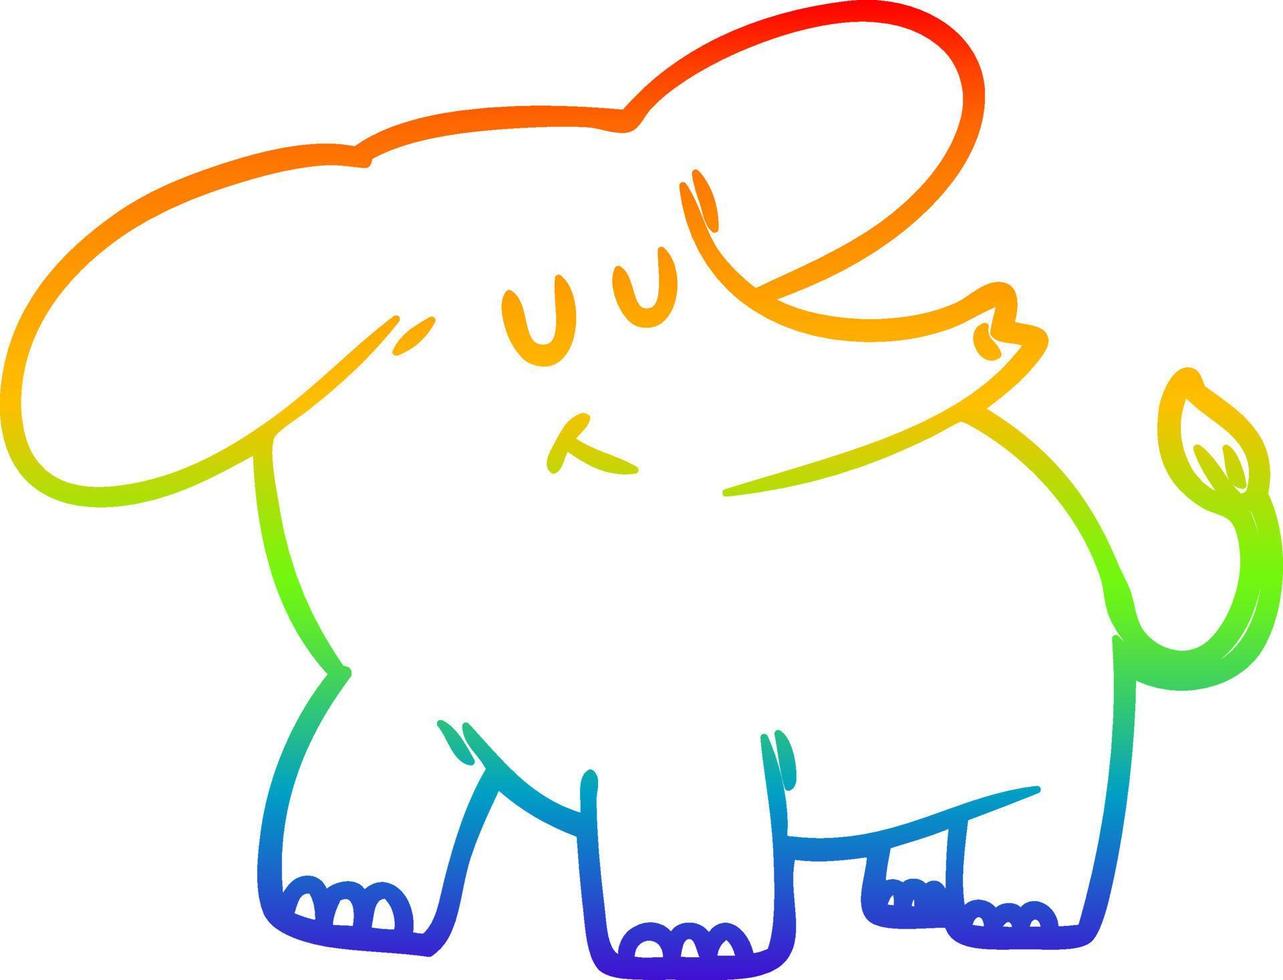 elefante del fumetto di disegno a tratteggio sfumato arcobaleno vettore